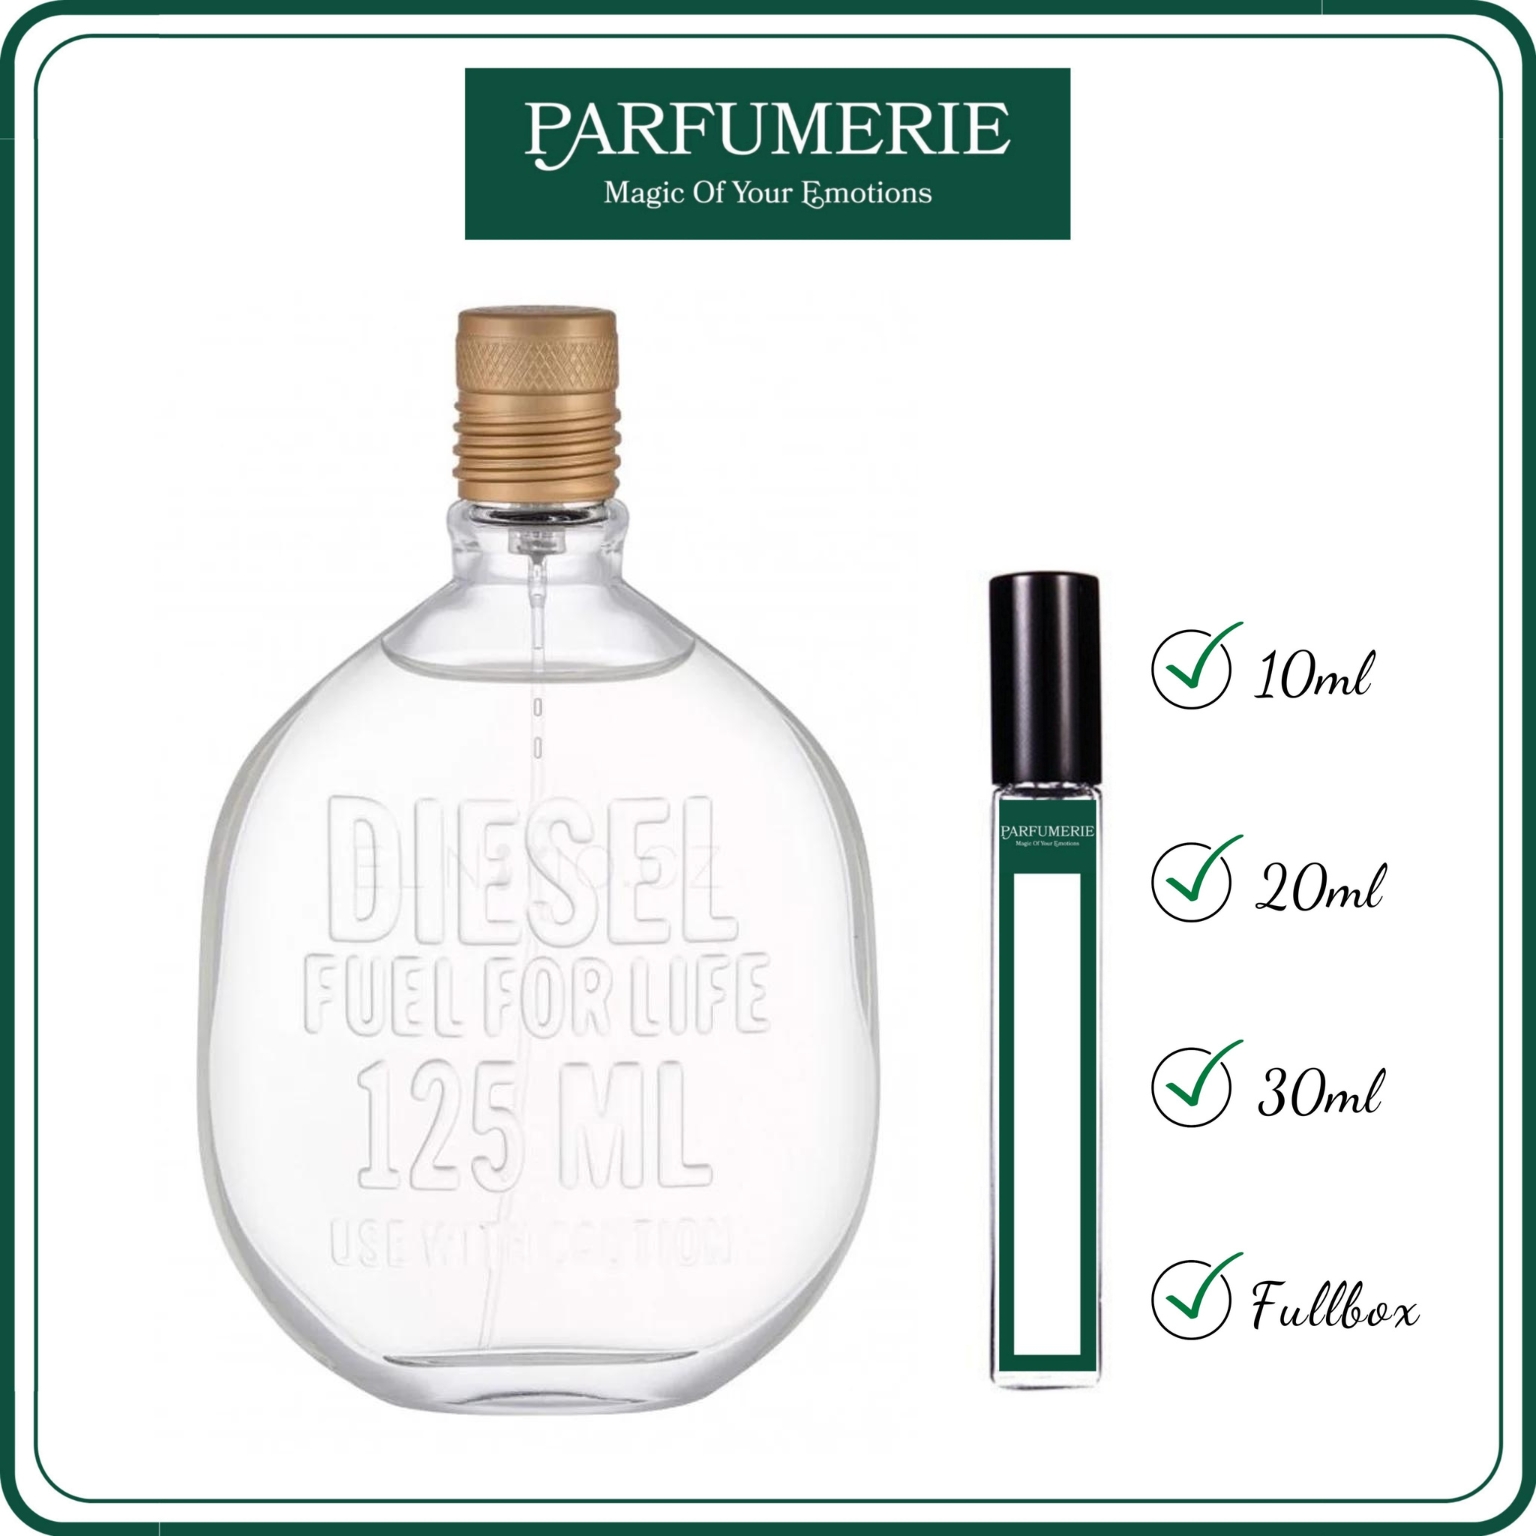 Nước hoa chiết chính hãng Diesel Fuel For Life từ Parfumerie đa dạng dung tích để khách hàng trải nghiệm